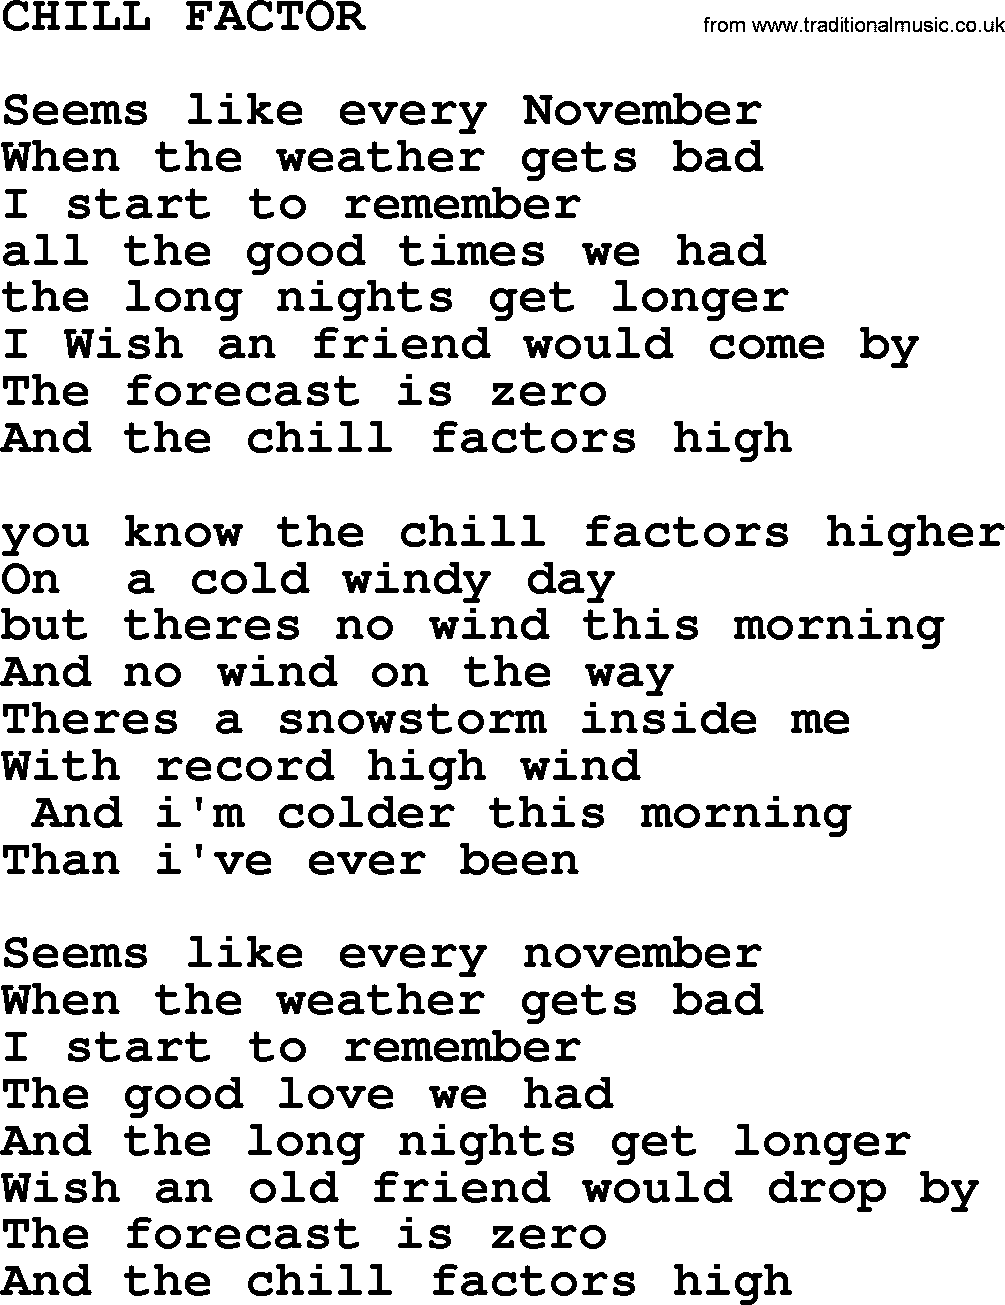 Merle Haggard song: Chill Factor, lyrics.